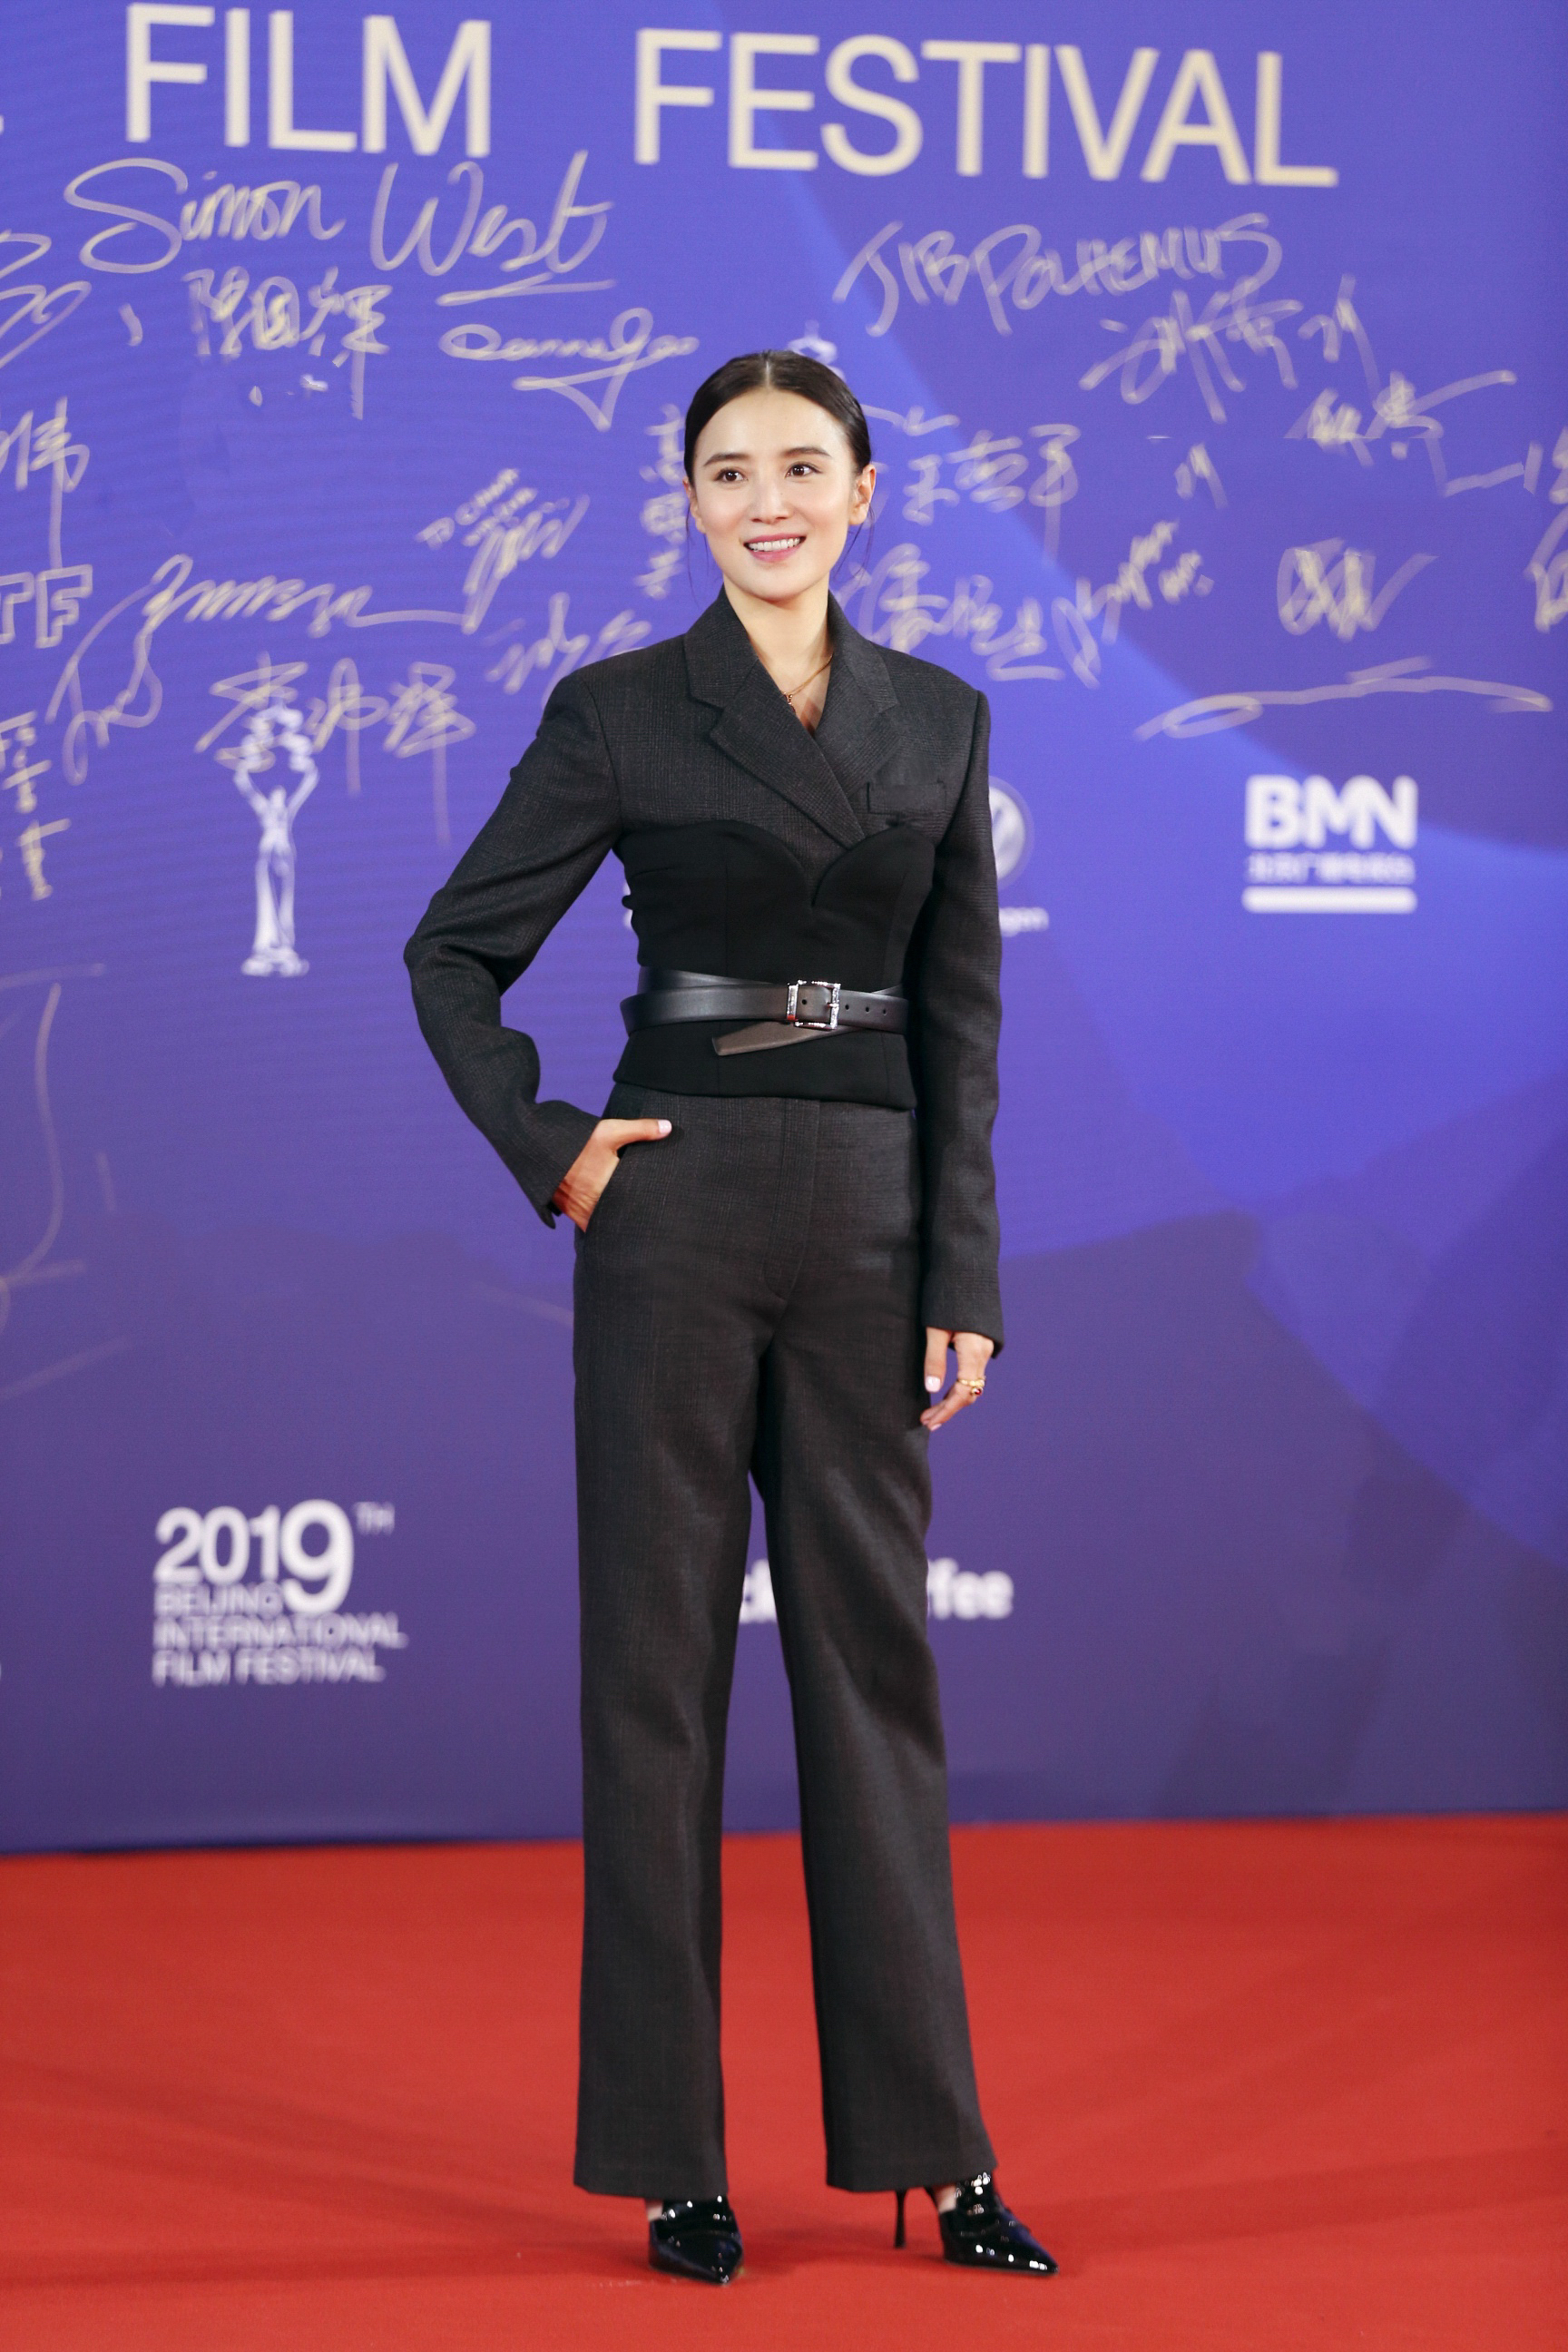 宋佳亮相北京国际电影节 红毯造型帅气献声开幕式